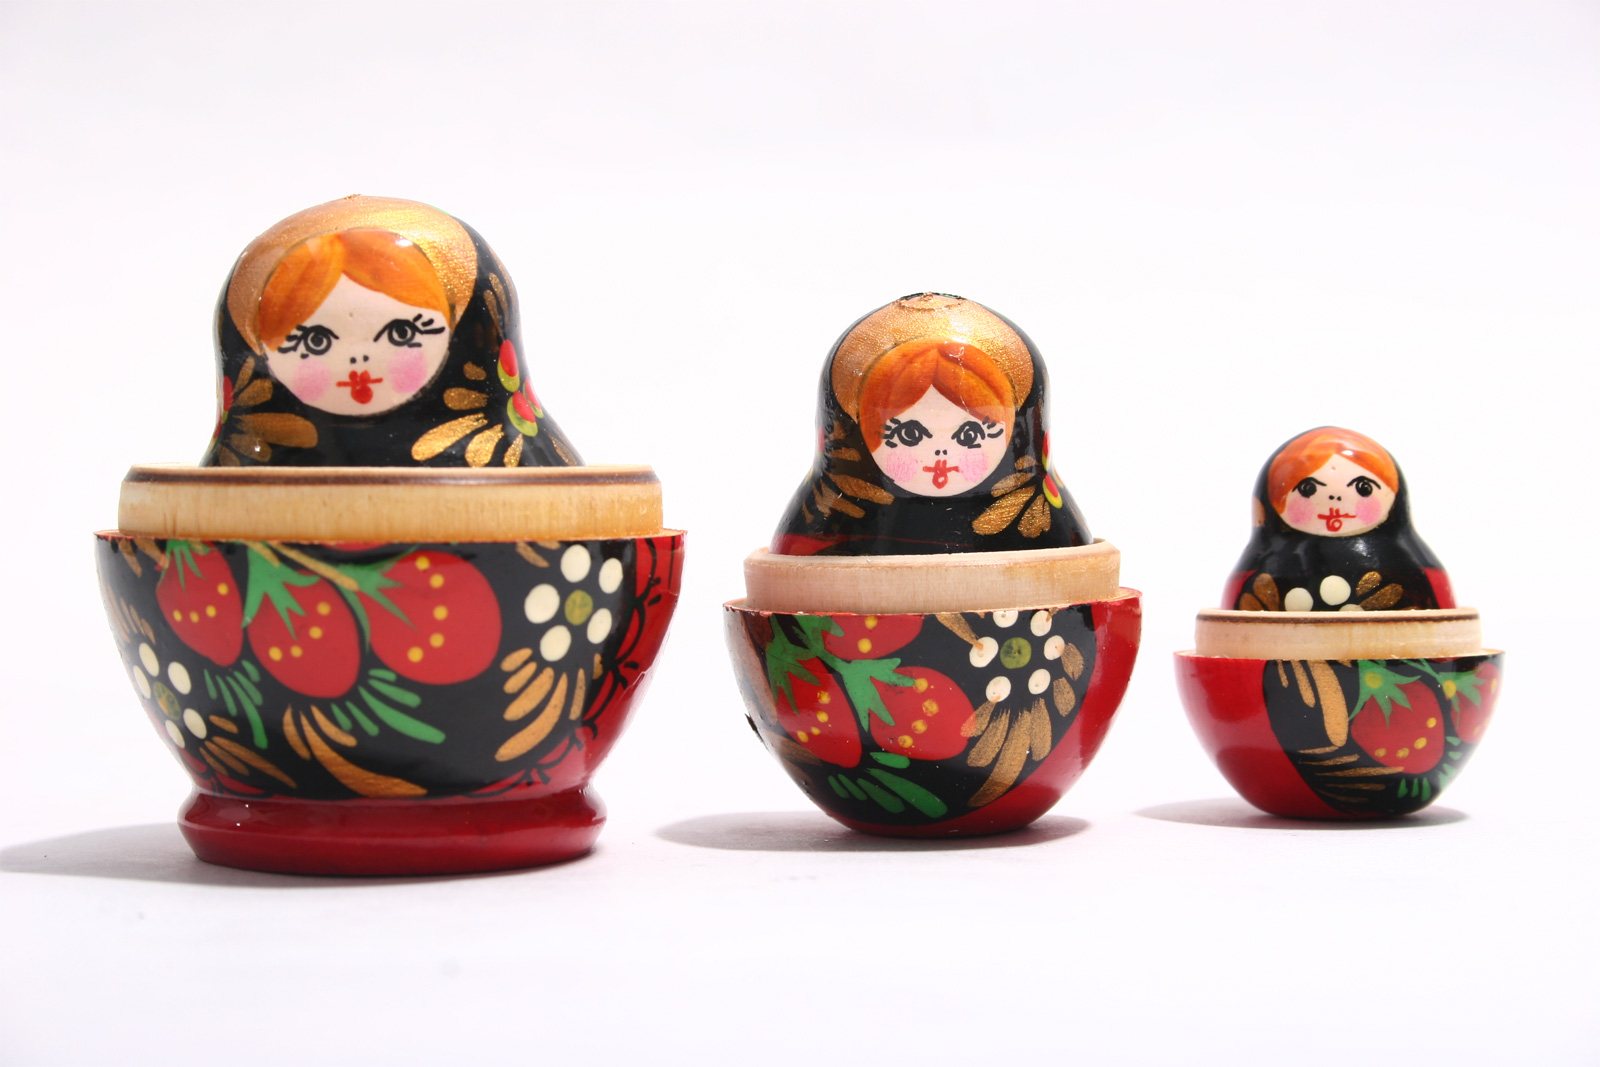 Three matryoshka dolls